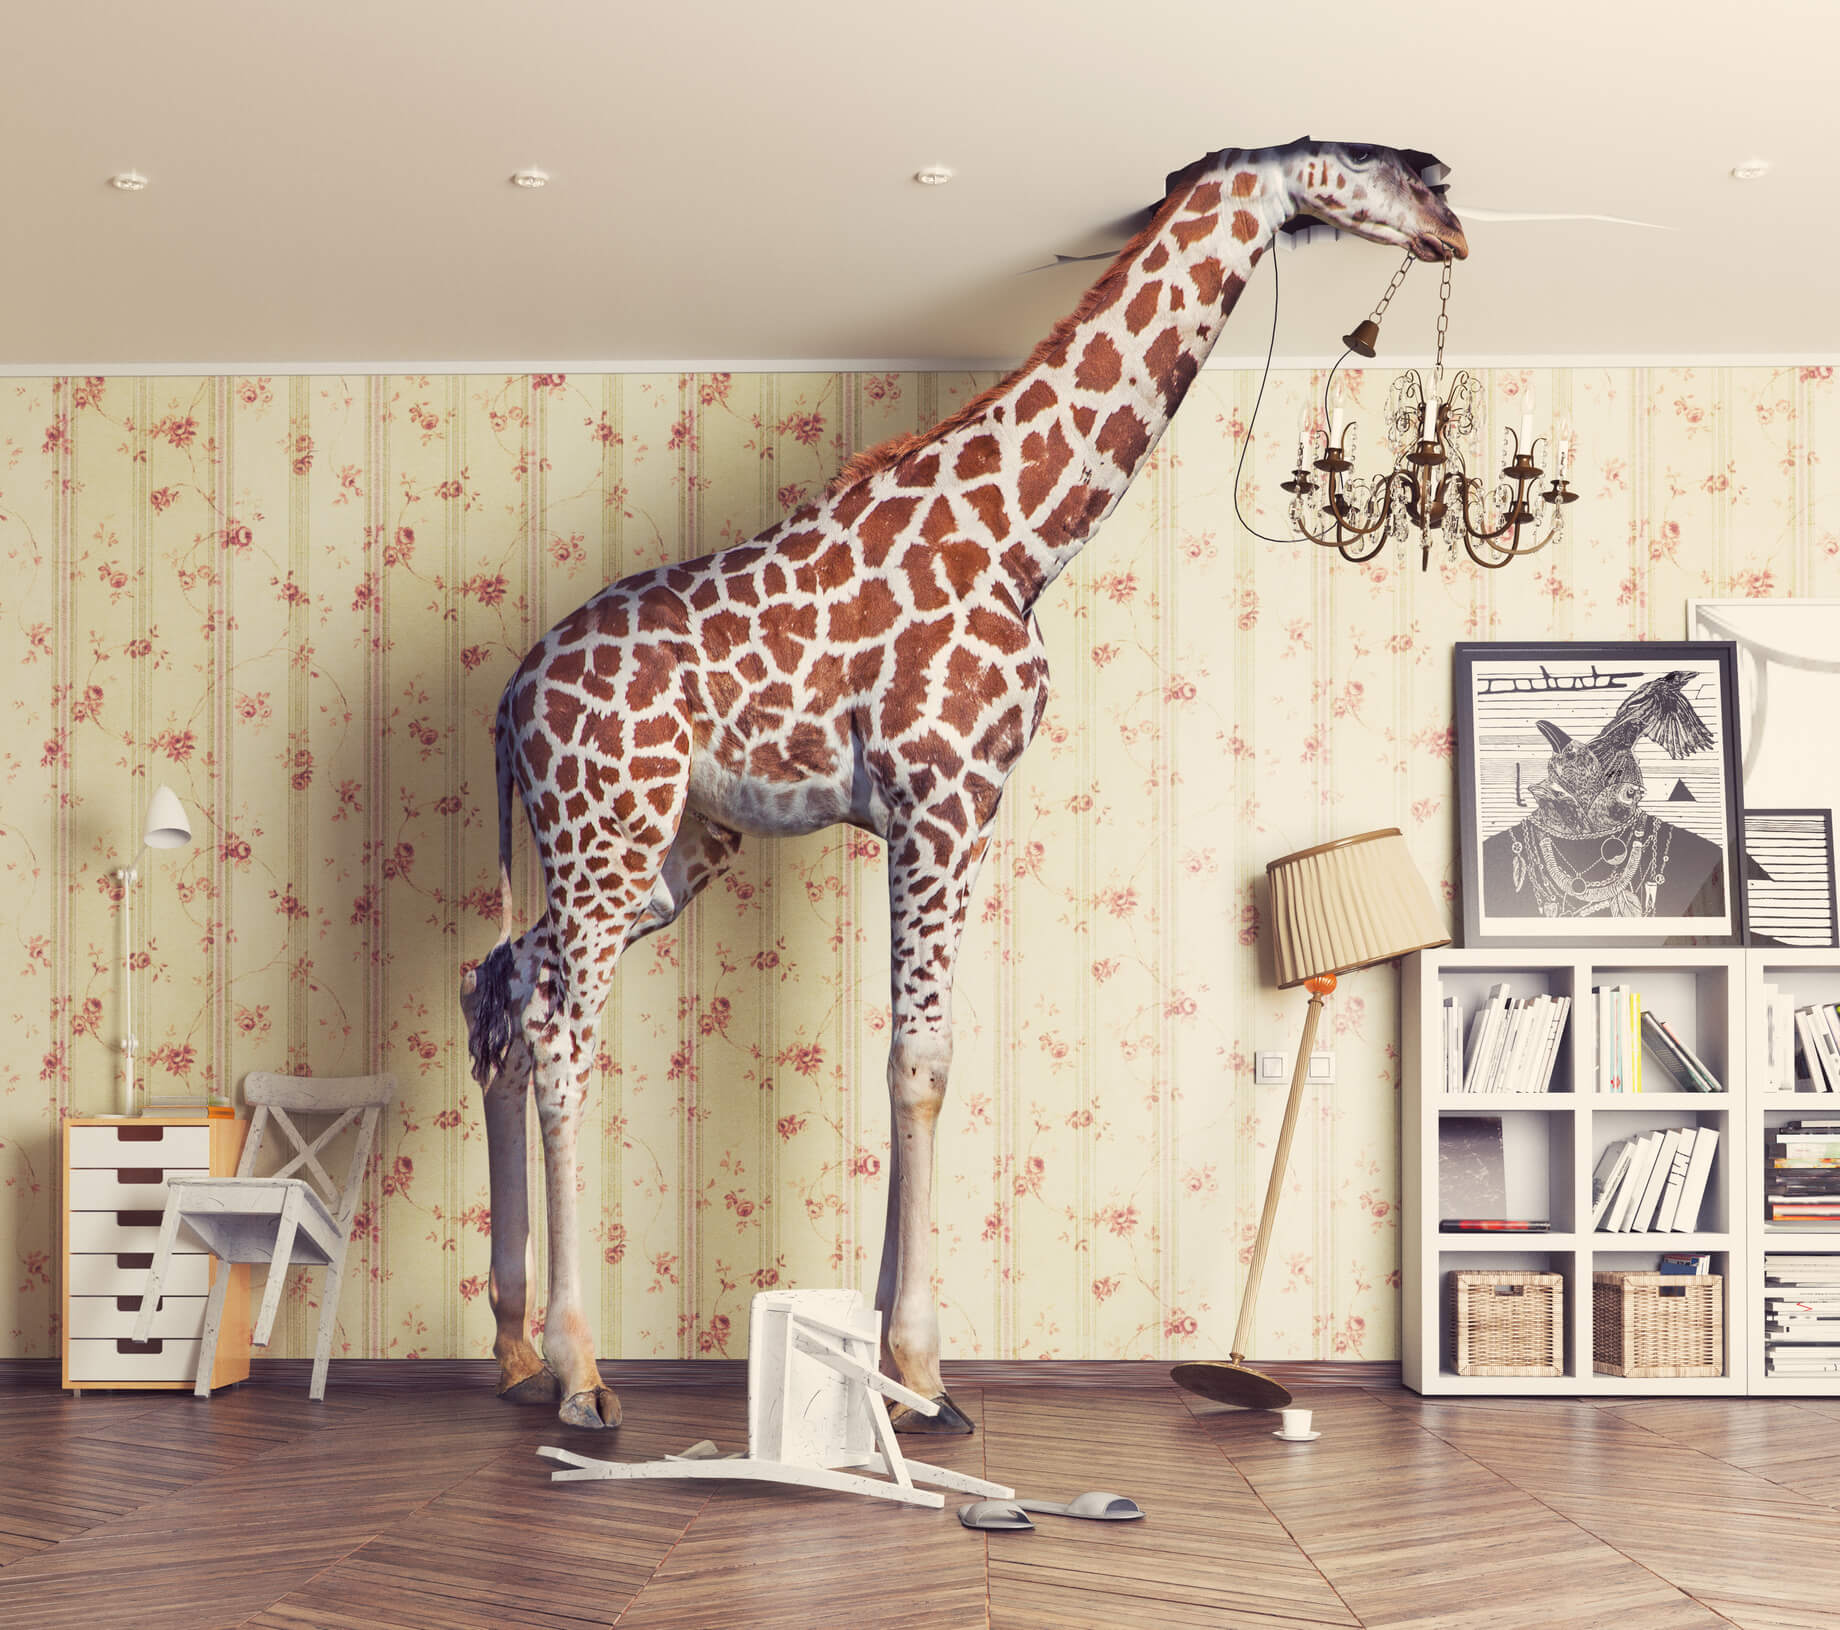 Giraffe in living room